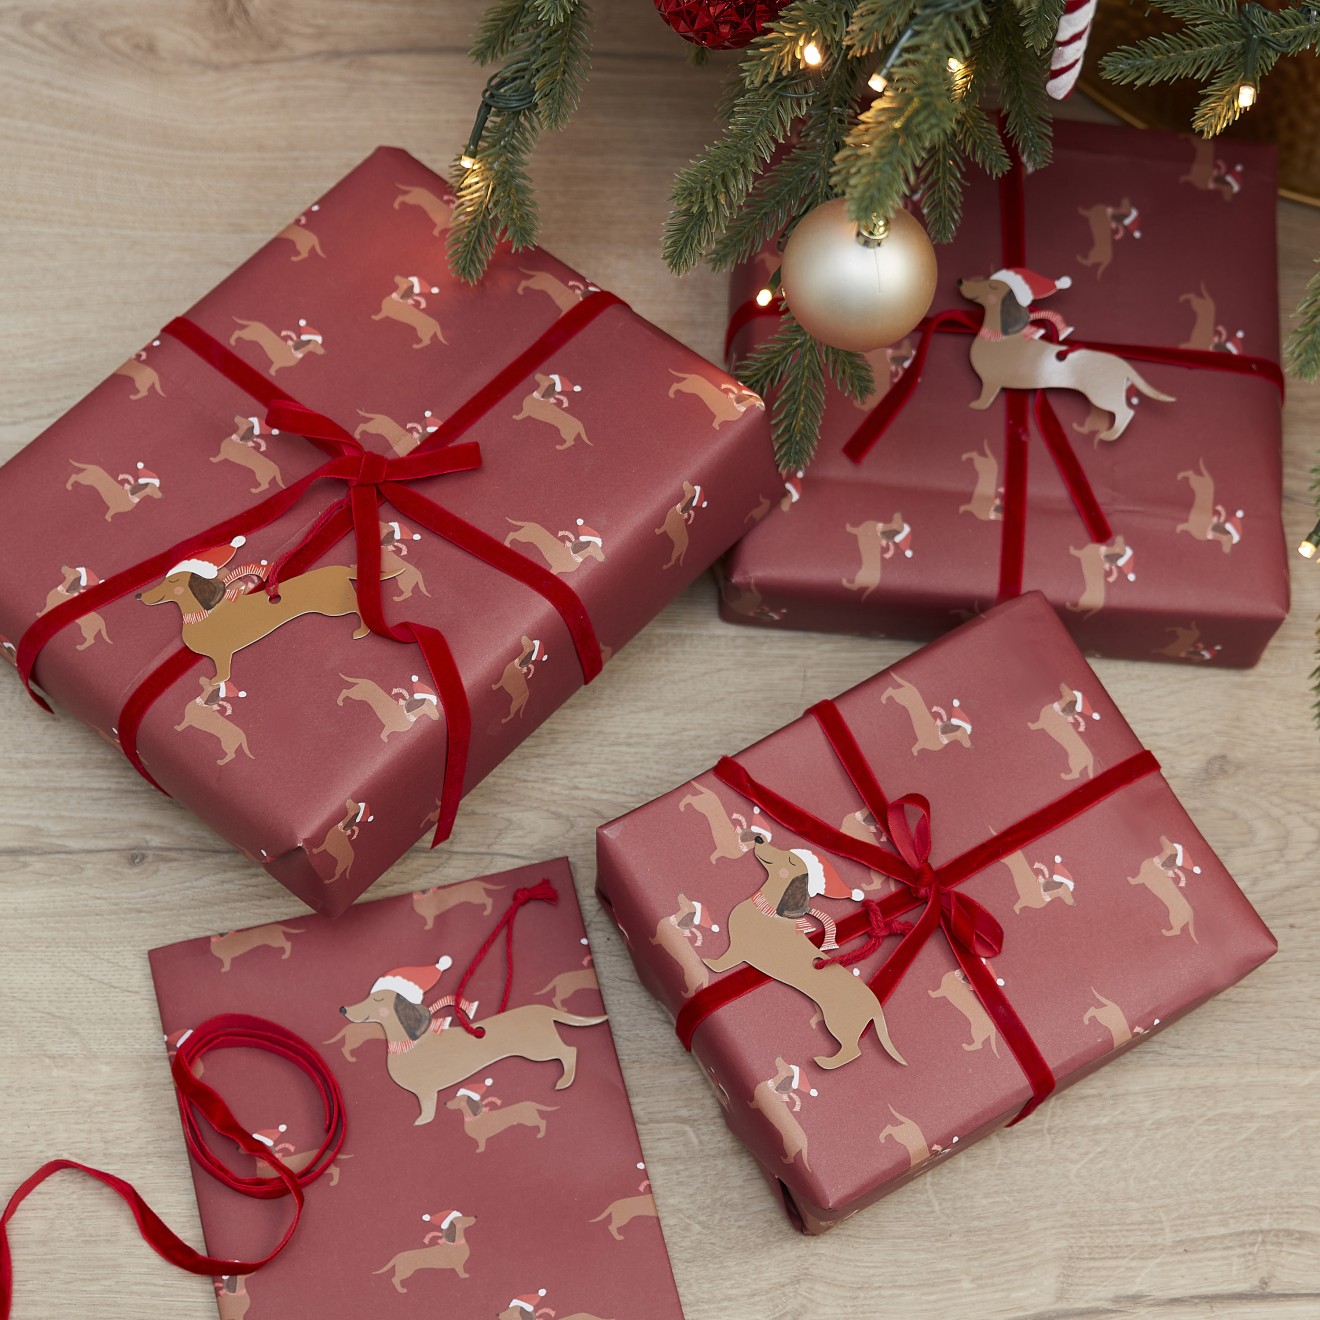 5 Gift Wrap Kit - Festive Sausage Dog Wrap Kit - Wrap, Ribbon & Tag